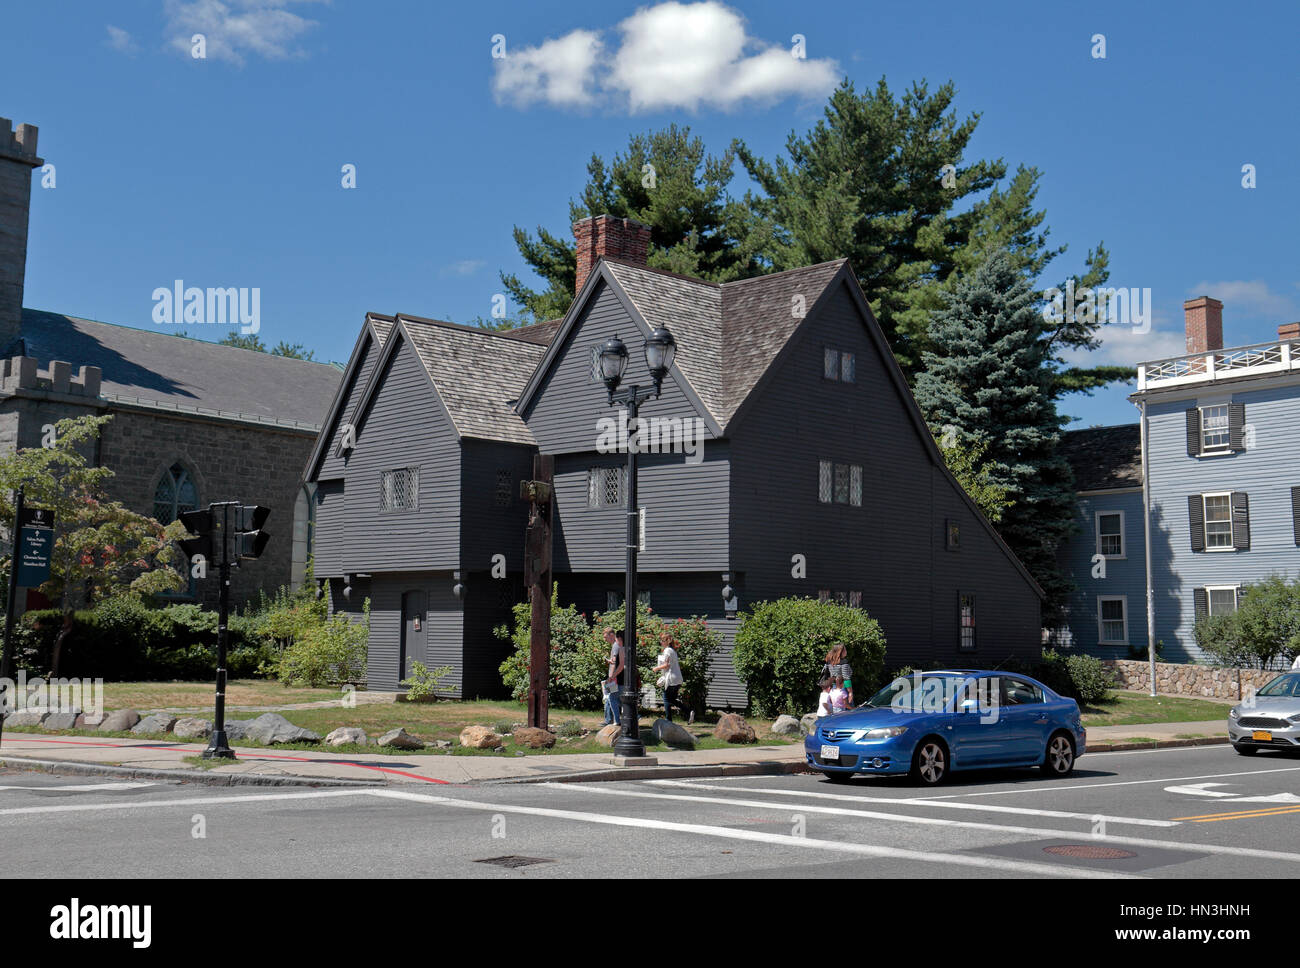 Die Jonathan Corwin House auch bekannt als The Witch House, im Zusammenhang mit einem Salem Witch Trials Museum in Salem, Massachusetts, Vereinigte Staaten. Stockfoto